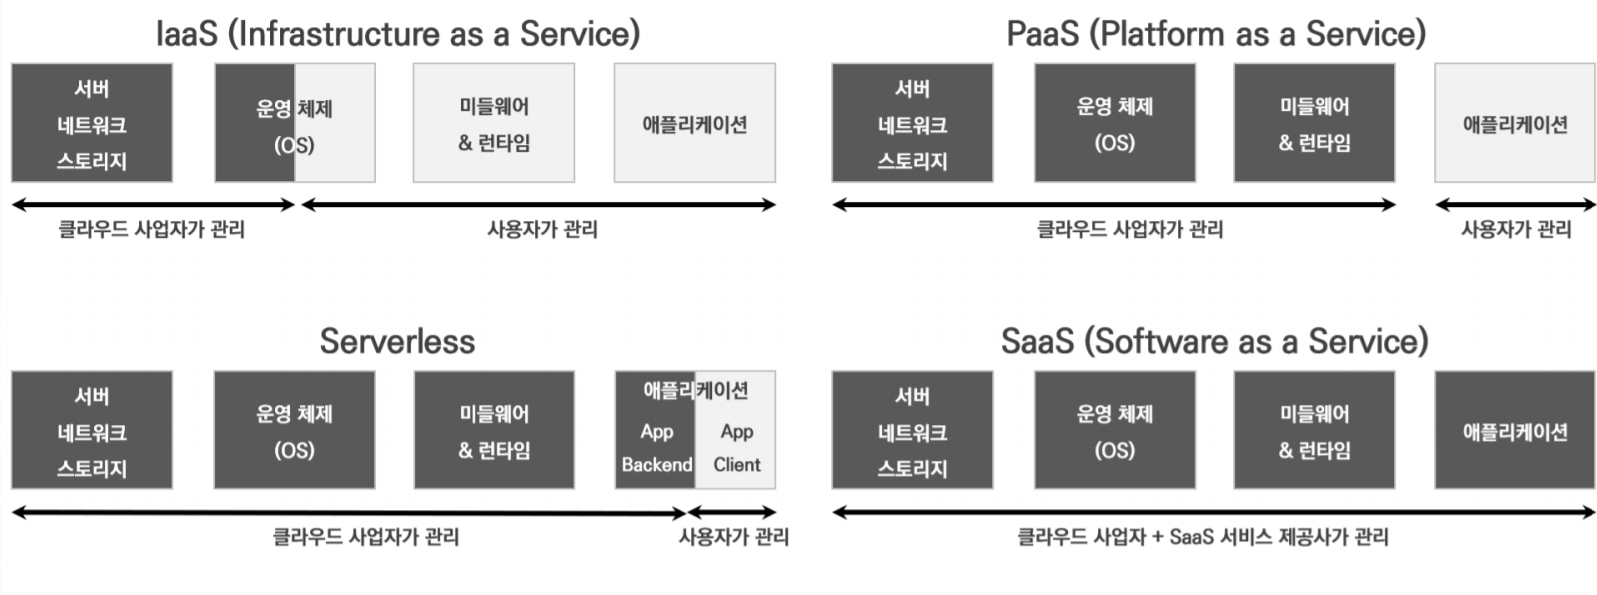 IaaS & PaaS & Serverless & SaaS 의 차이